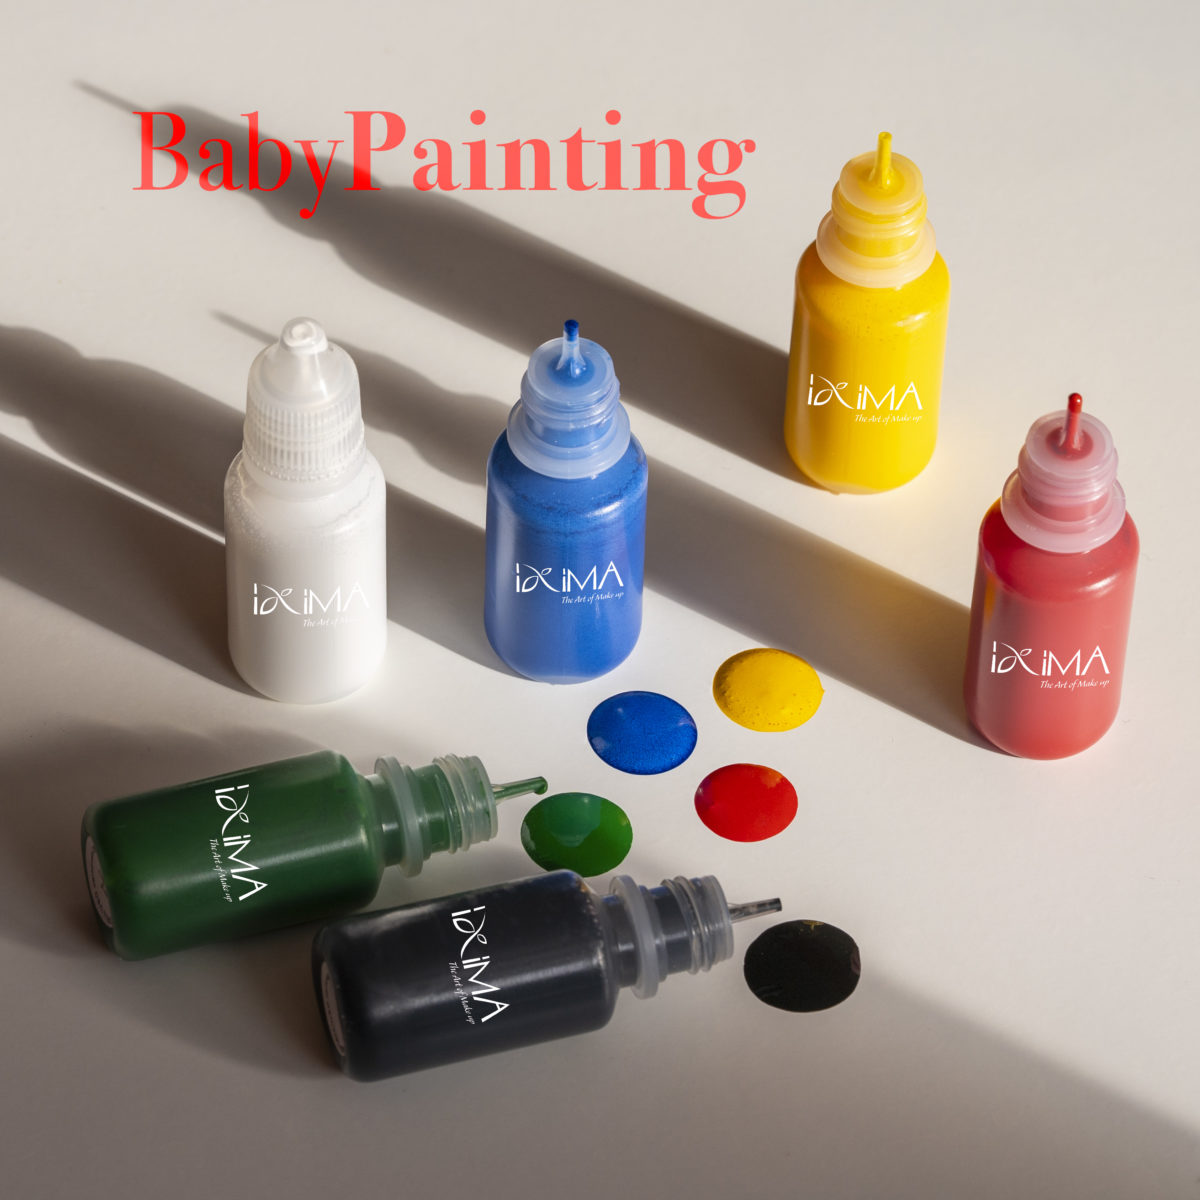 Body painting 5 colori: bianco, azzurro, giallo.rosso, verde e nero. Prodotto liquido, per realizzare disegni sul corpo, fare asciugare.